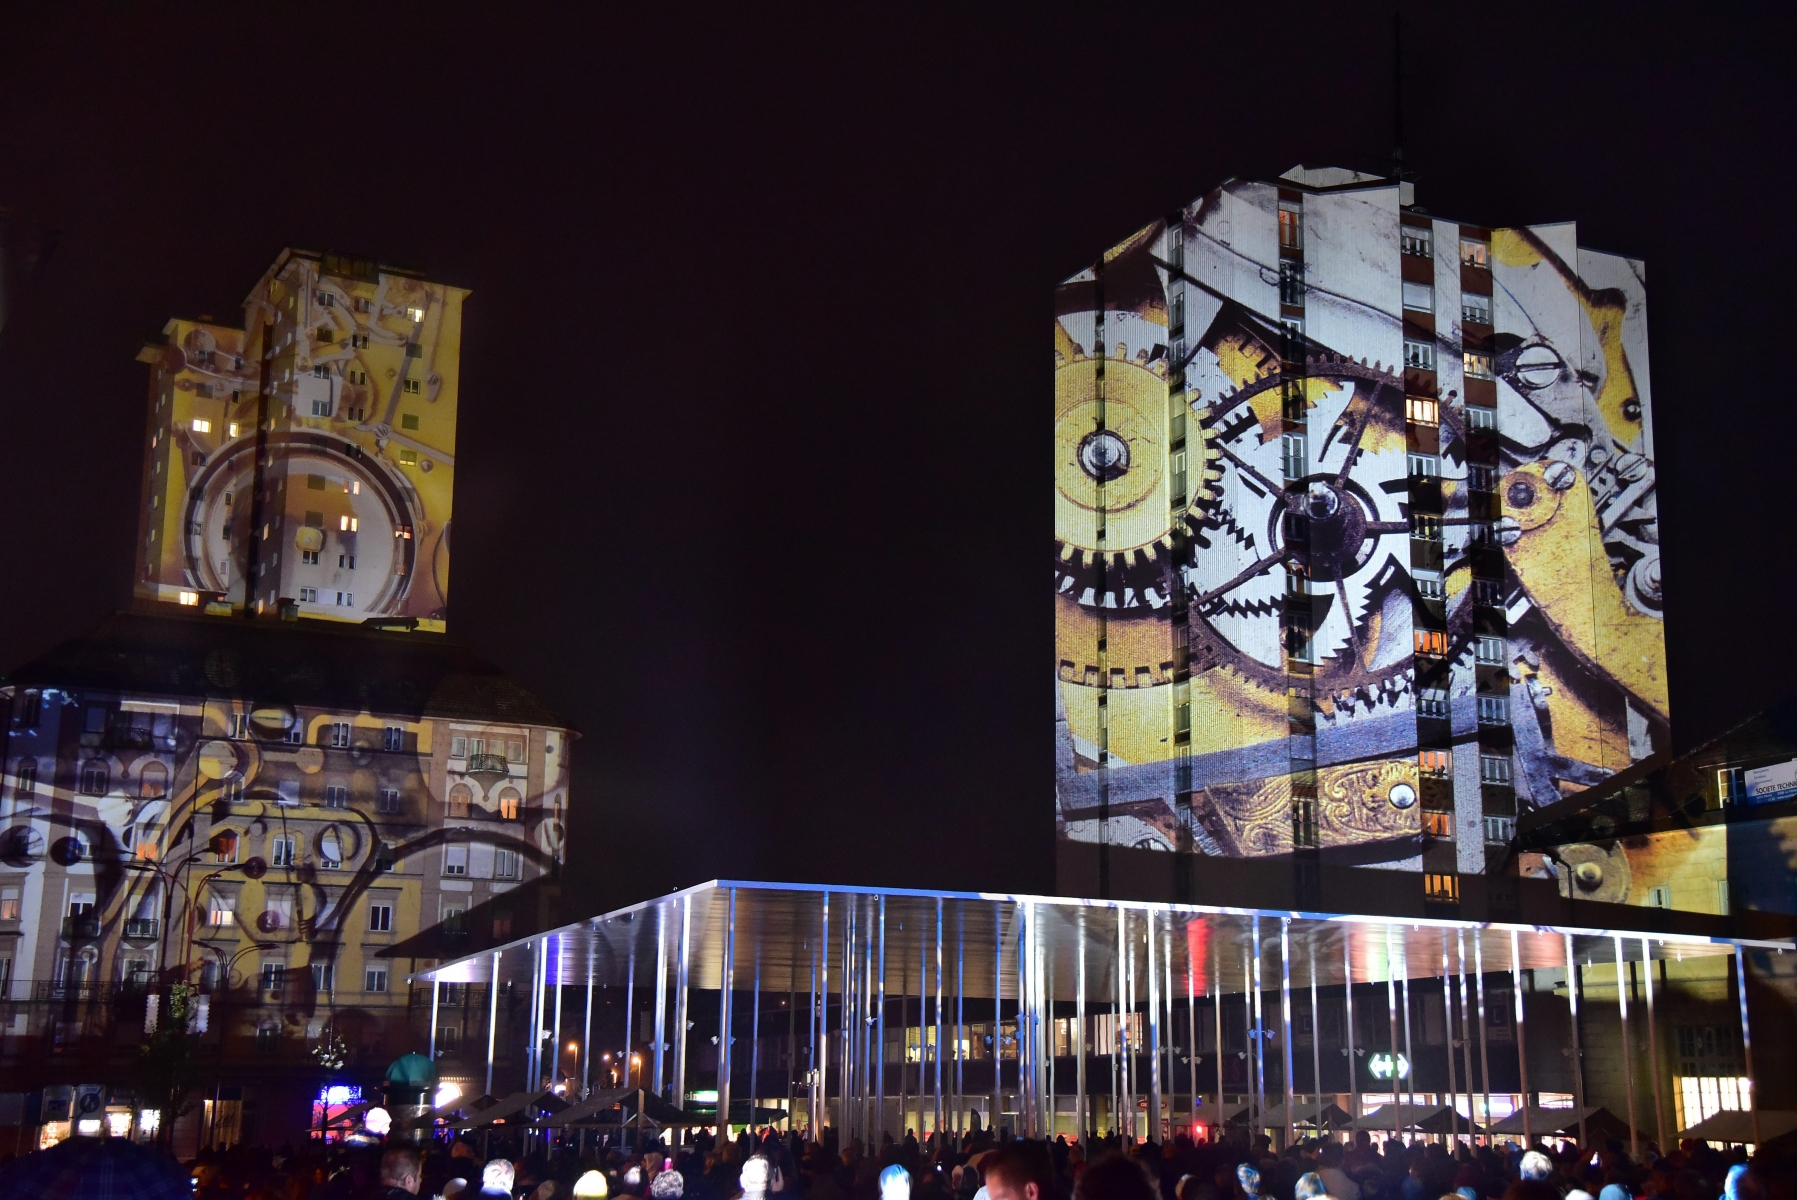 Inauguration de la nouvelle place de la Gare avec projections de Gerry Hofstetter

La Chaux-de-Fonds, le 22 octobre 2015
Photo: Richard Leuenberger  PLACE DE LA GARE LA CHAUX-DE-FONDS